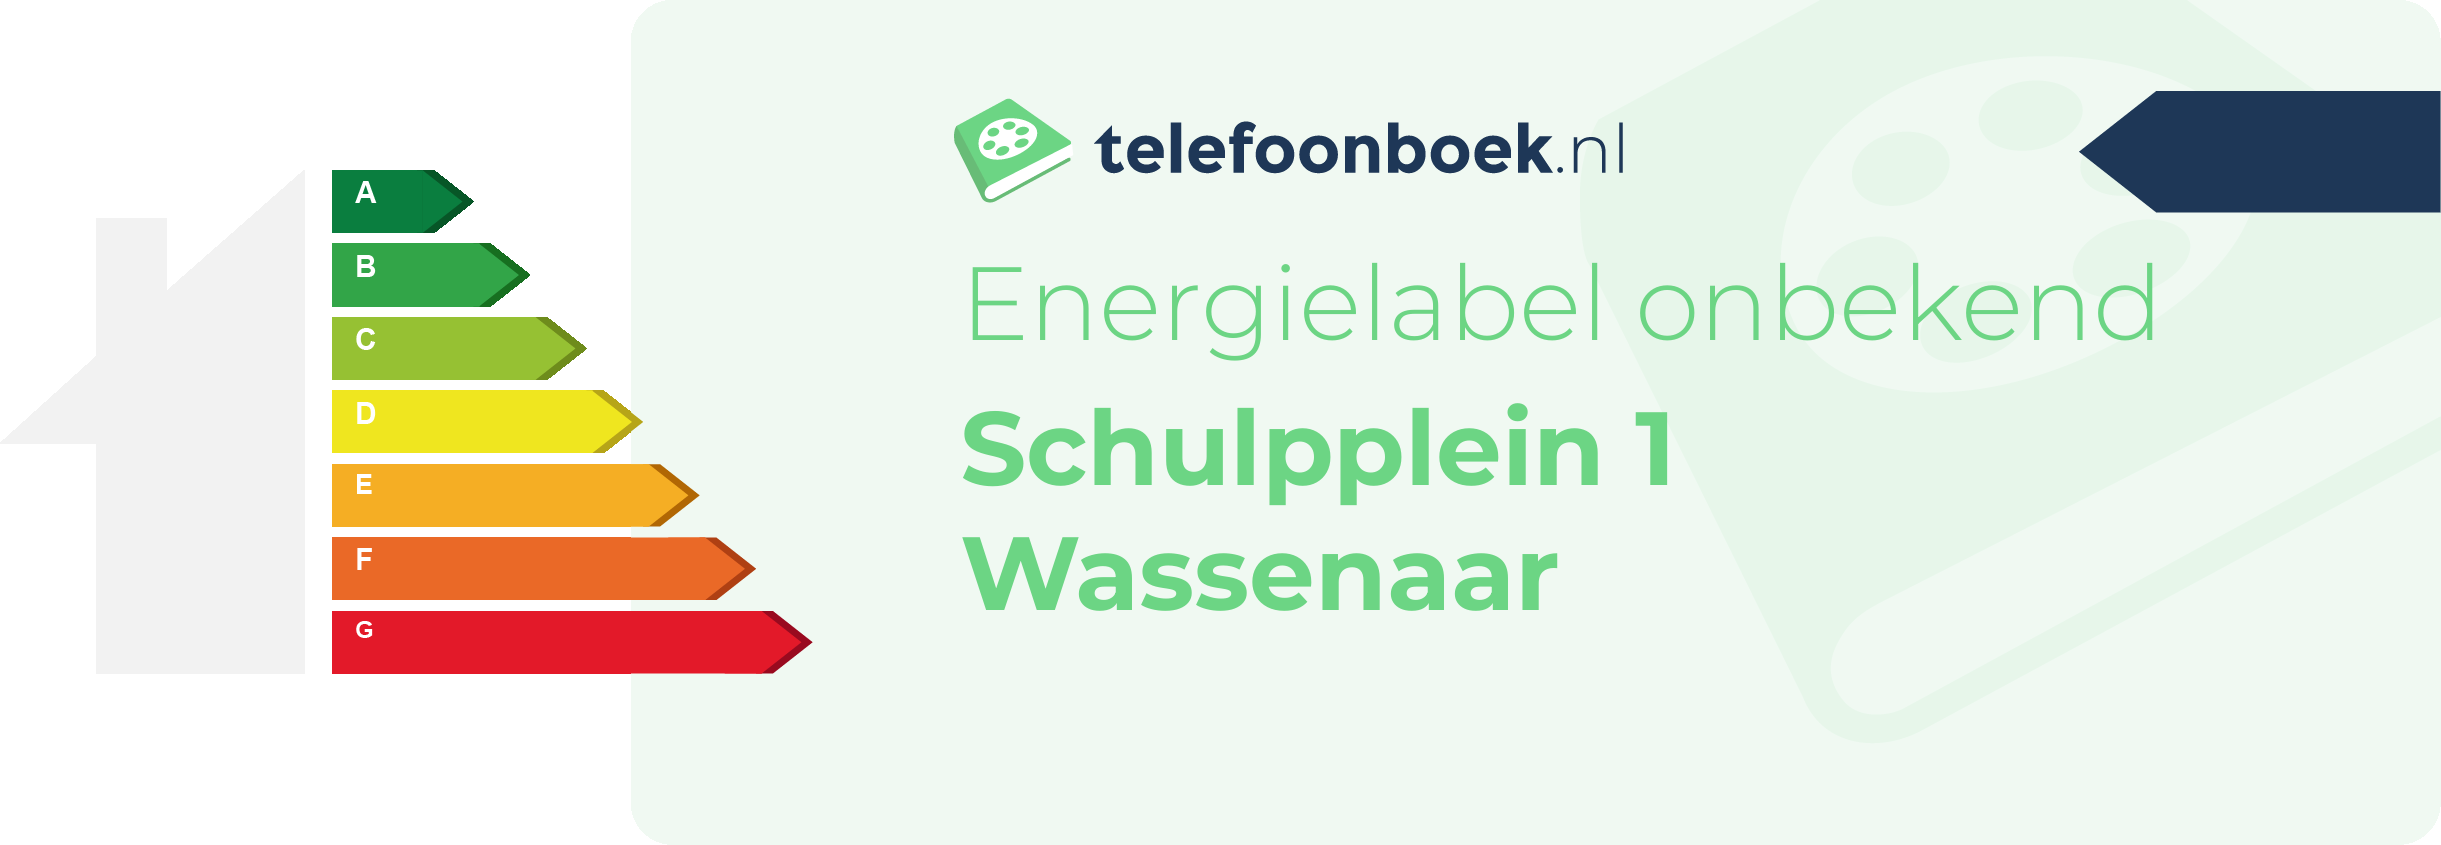 Energielabel Schulpplein 1 Wassenaar